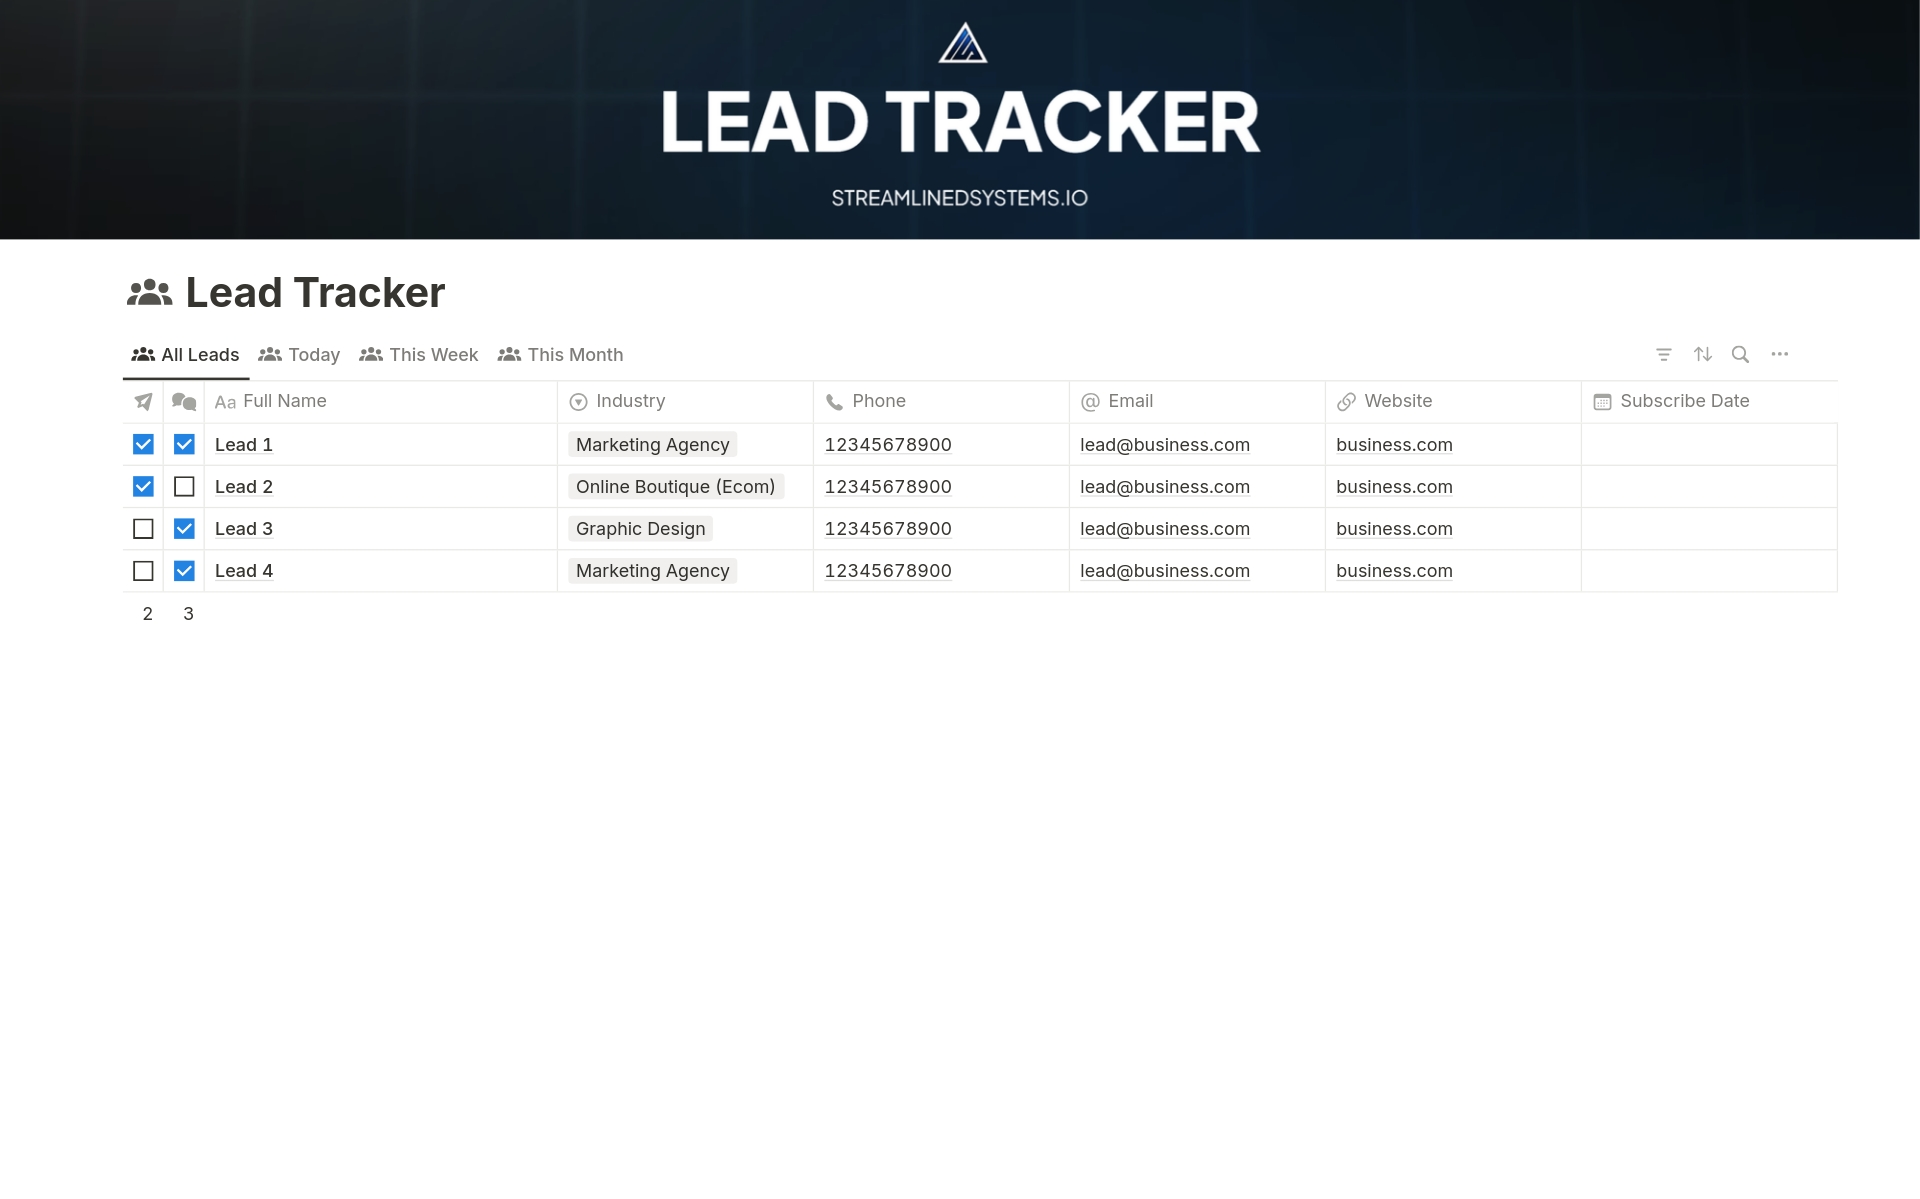 Vista previa de una plantilla para Lead Tracker